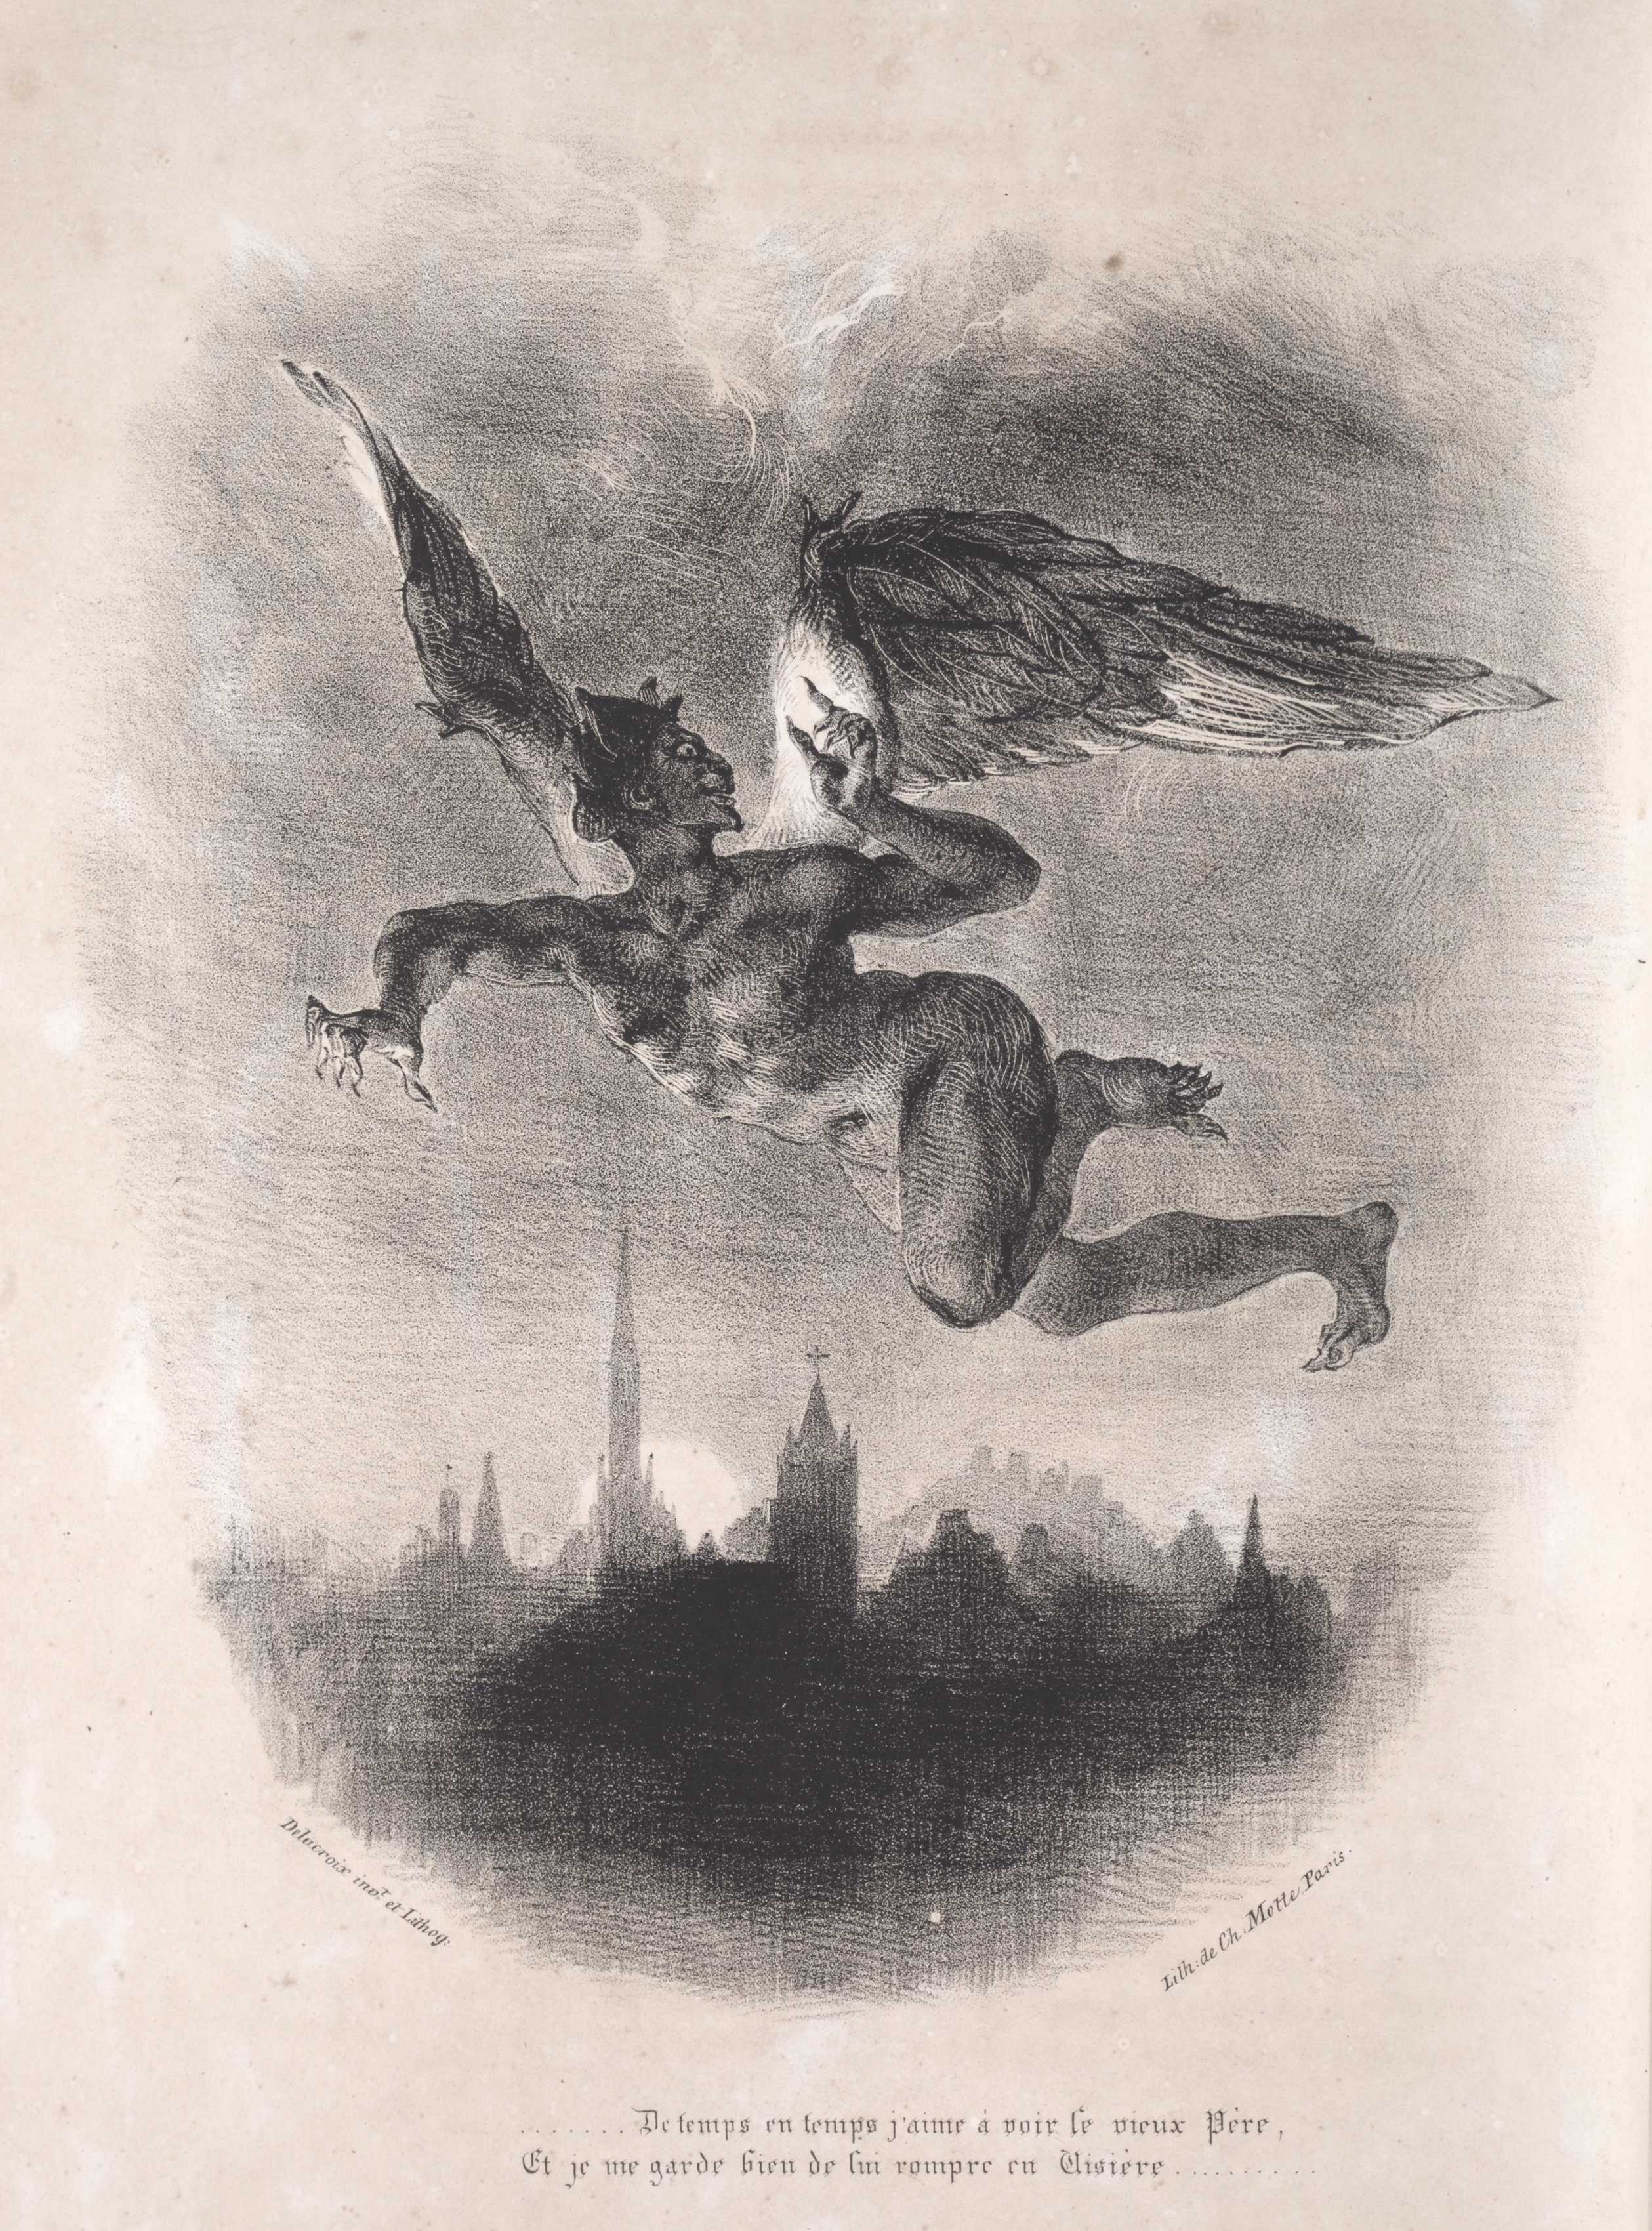 Illustrations for Faust:  Méphistophélés in the air